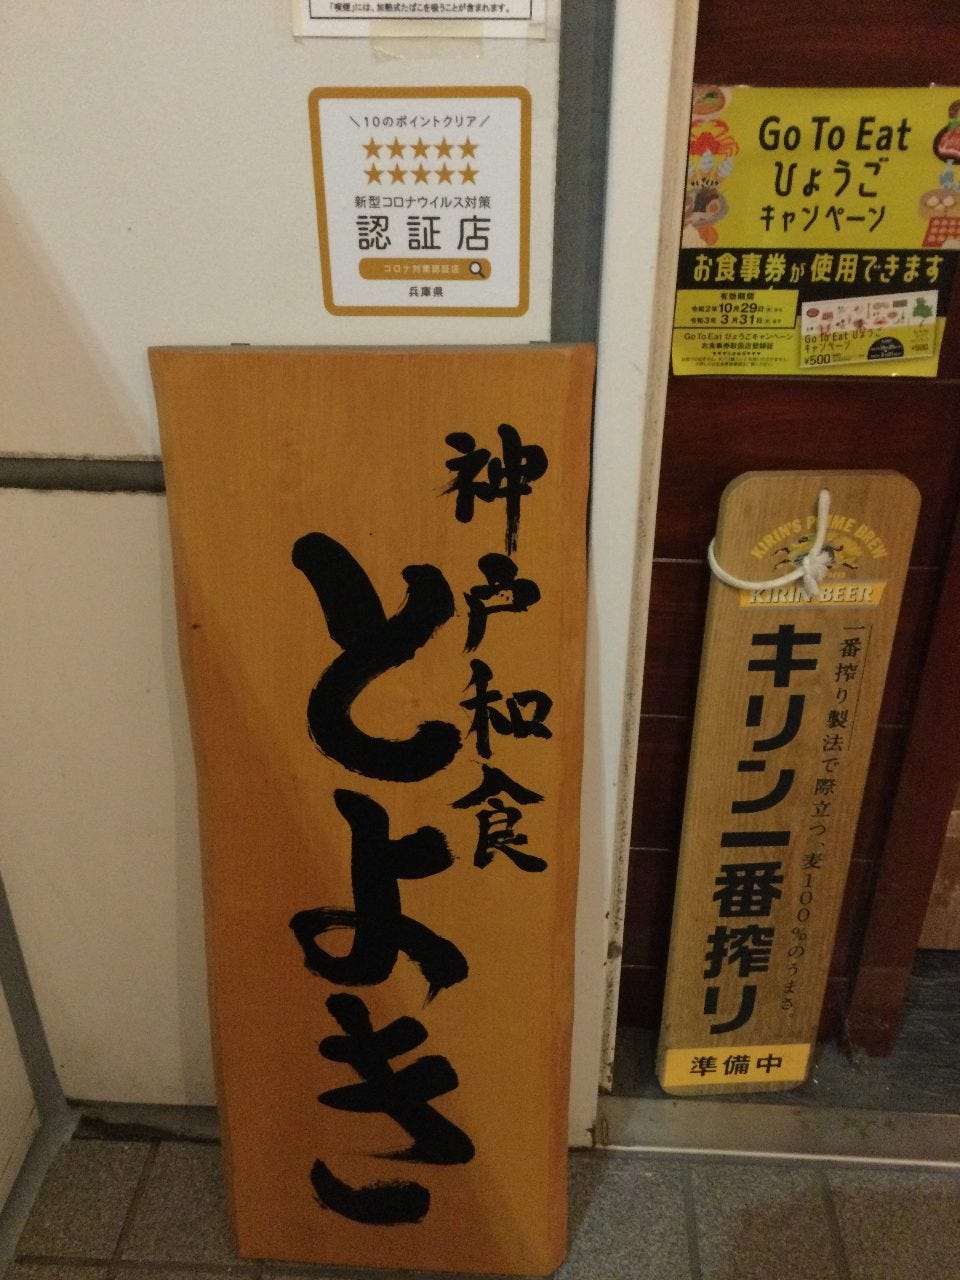 兵庫県認証店ステッカーあります。